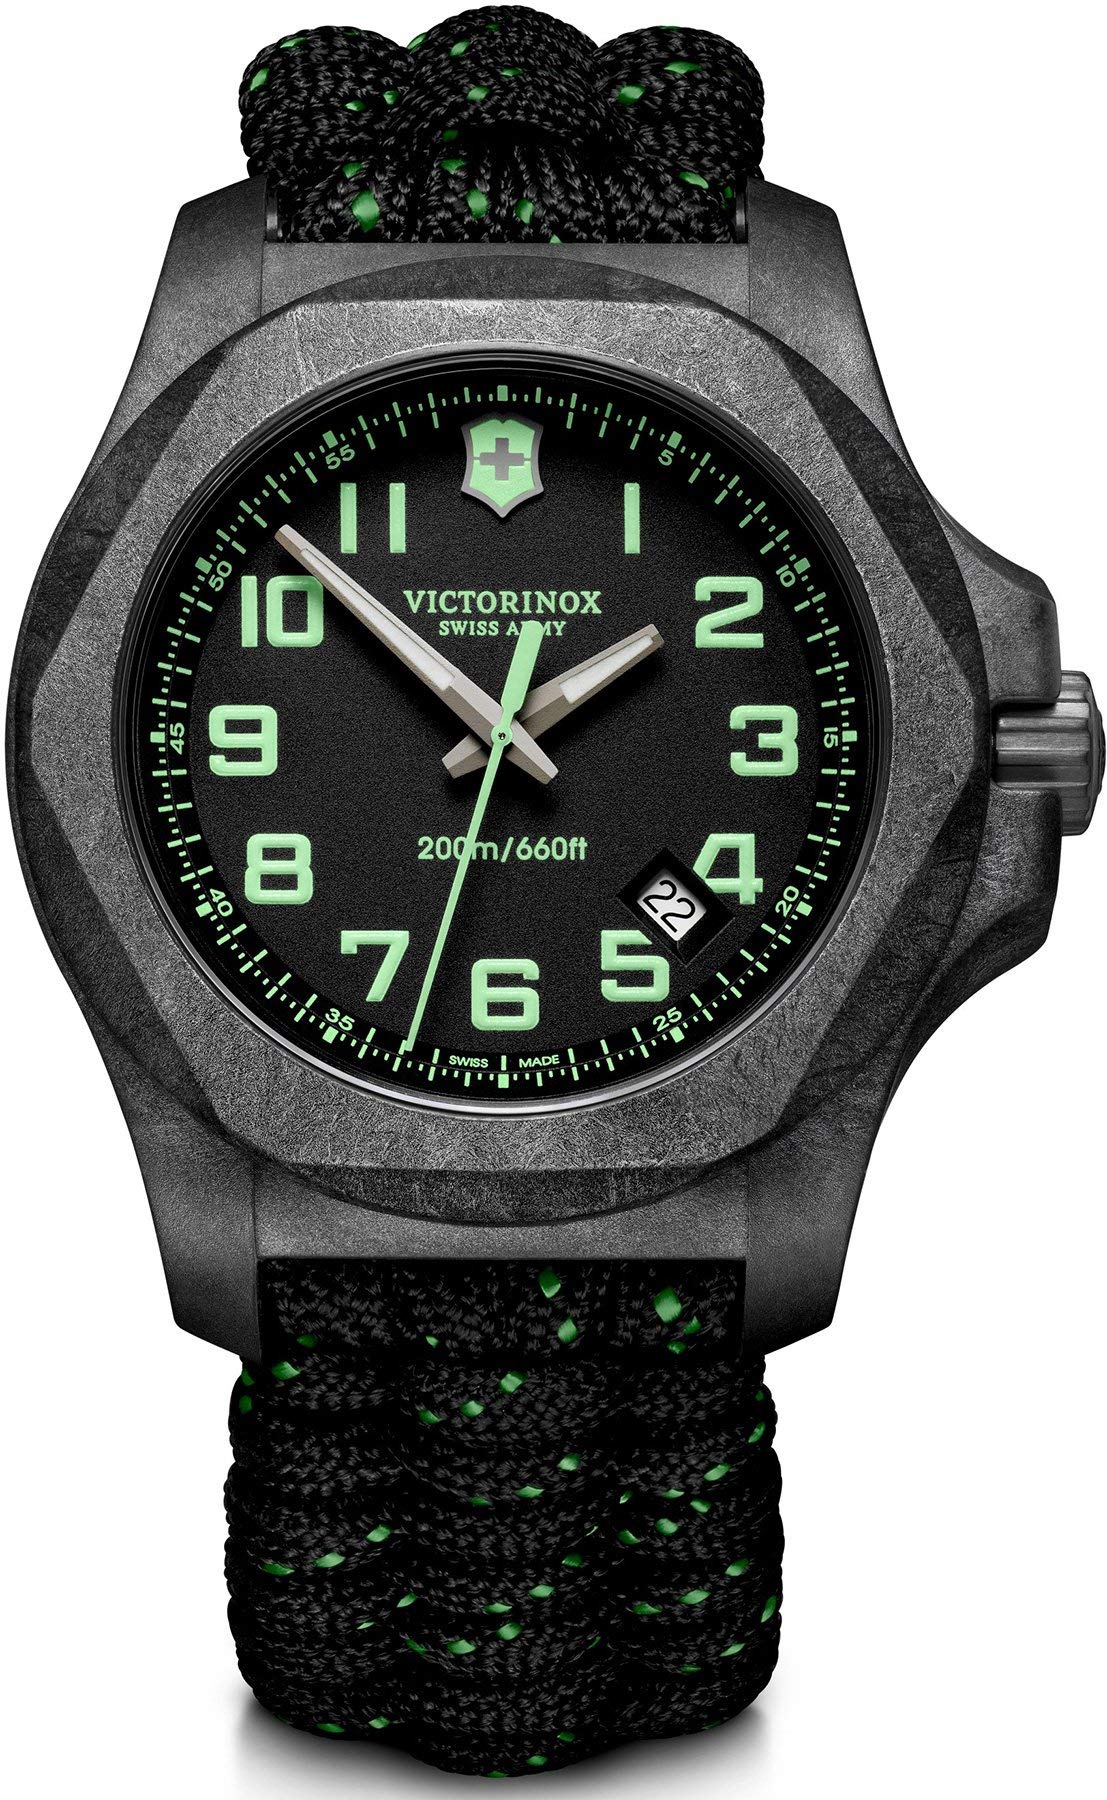 Victorinox Herren-Uhr I.N.O.X. Carbon, Herren-Armbanduhr, analog, Quarz, Wasserdicht bis 200 m, Gehäuse-Ø 43 mm, Armband 21 mm, 98 g, Schwarz